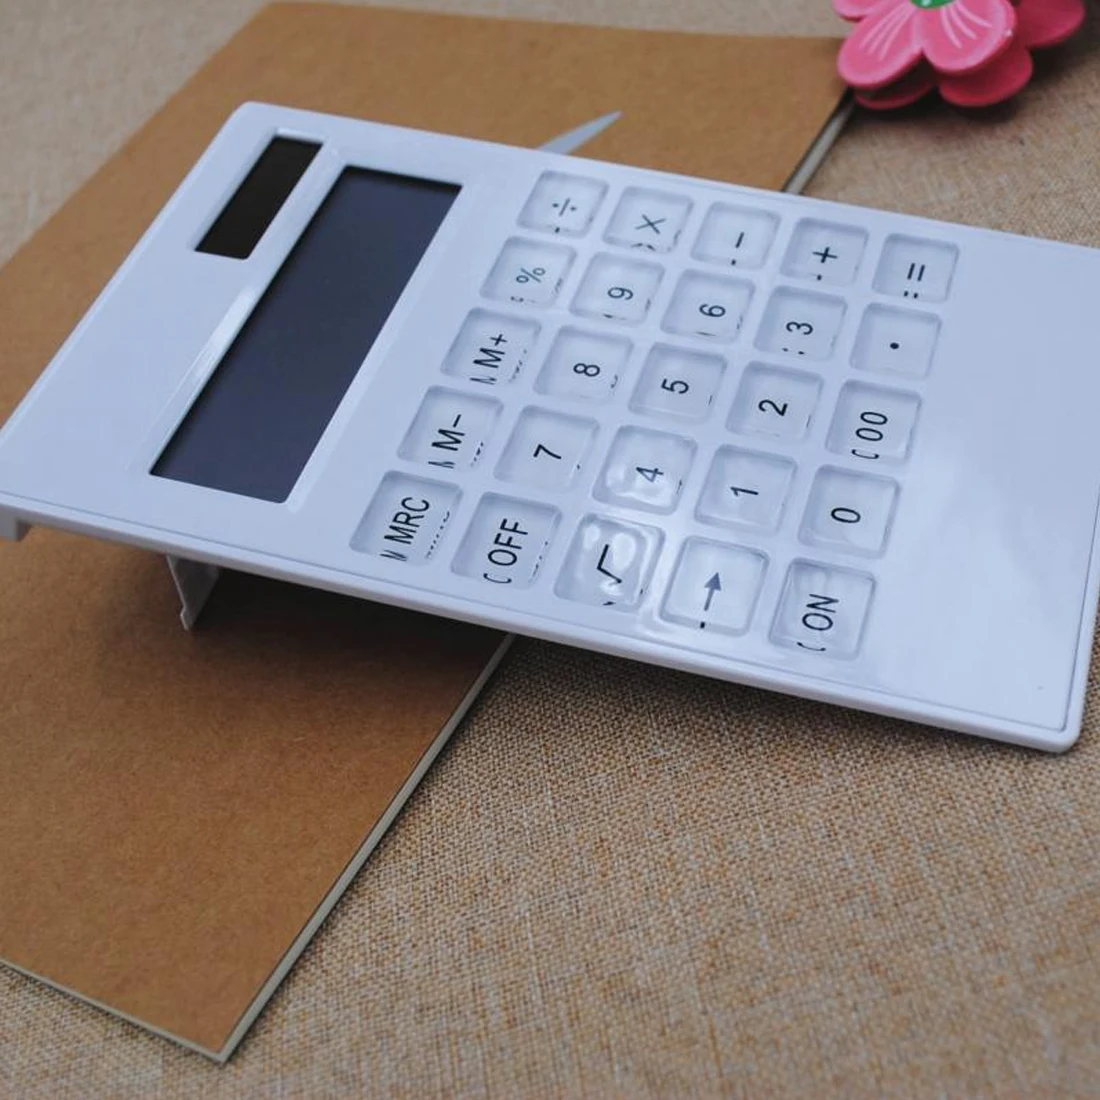 NOYOKERE портативный креативный тонкий мини 12 цифровой калькулятор солнечной энергии Кристалл клавиатура Двойной источник питания